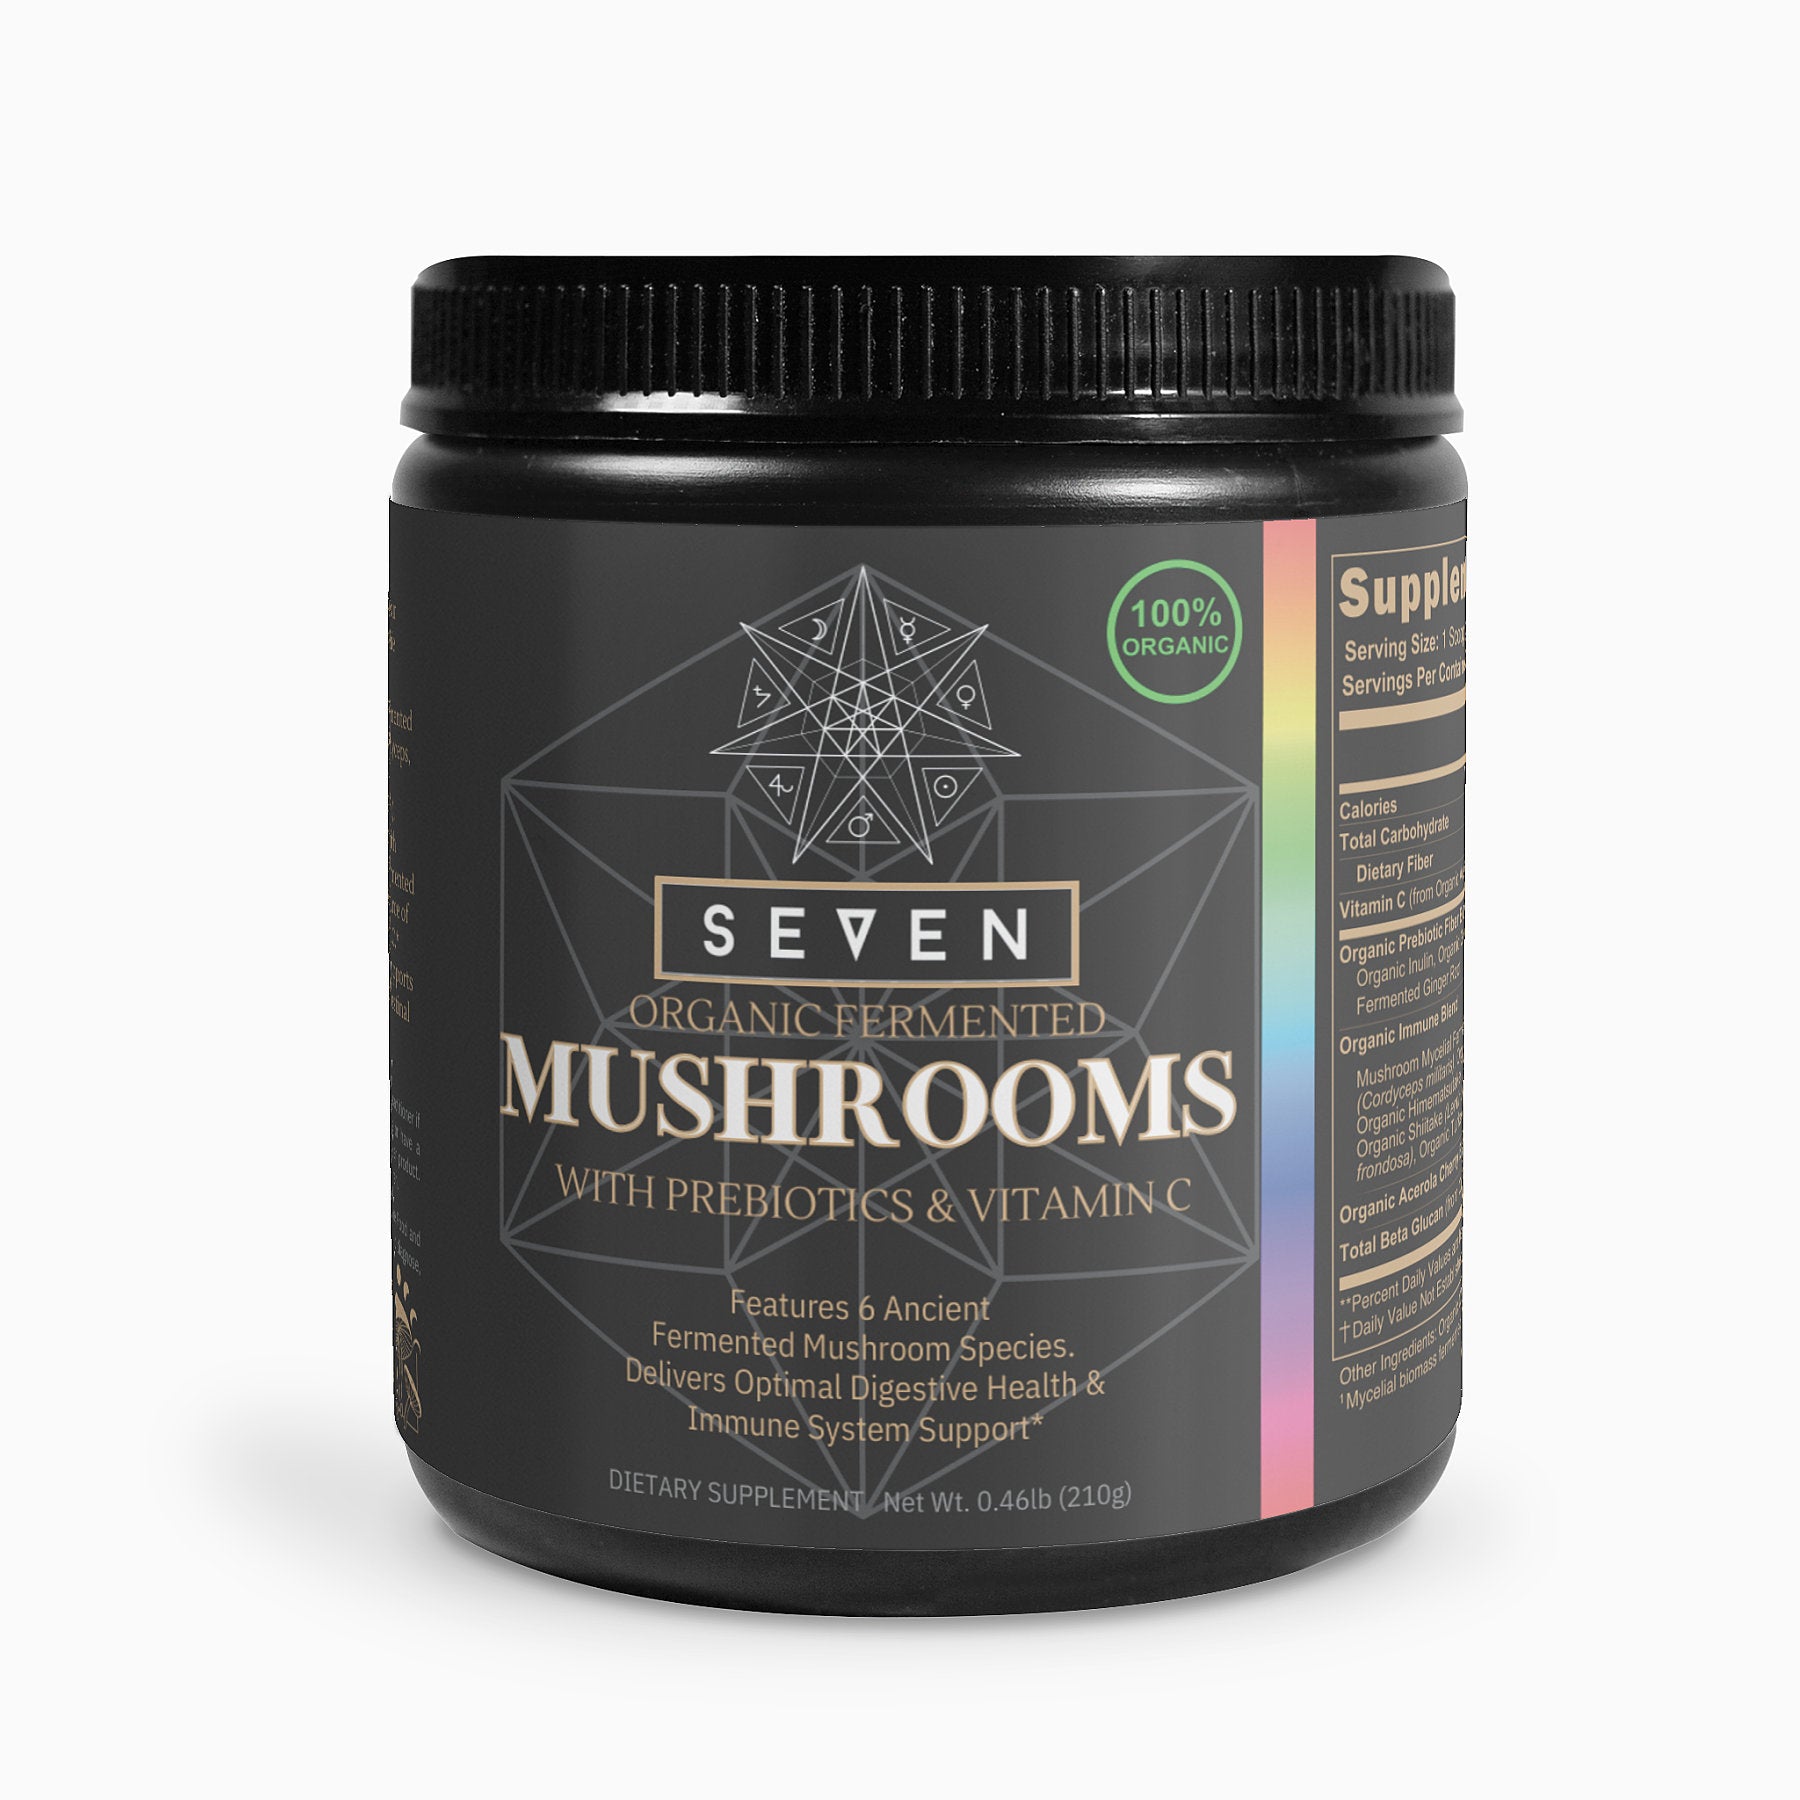 Fermented Mushroom Blend